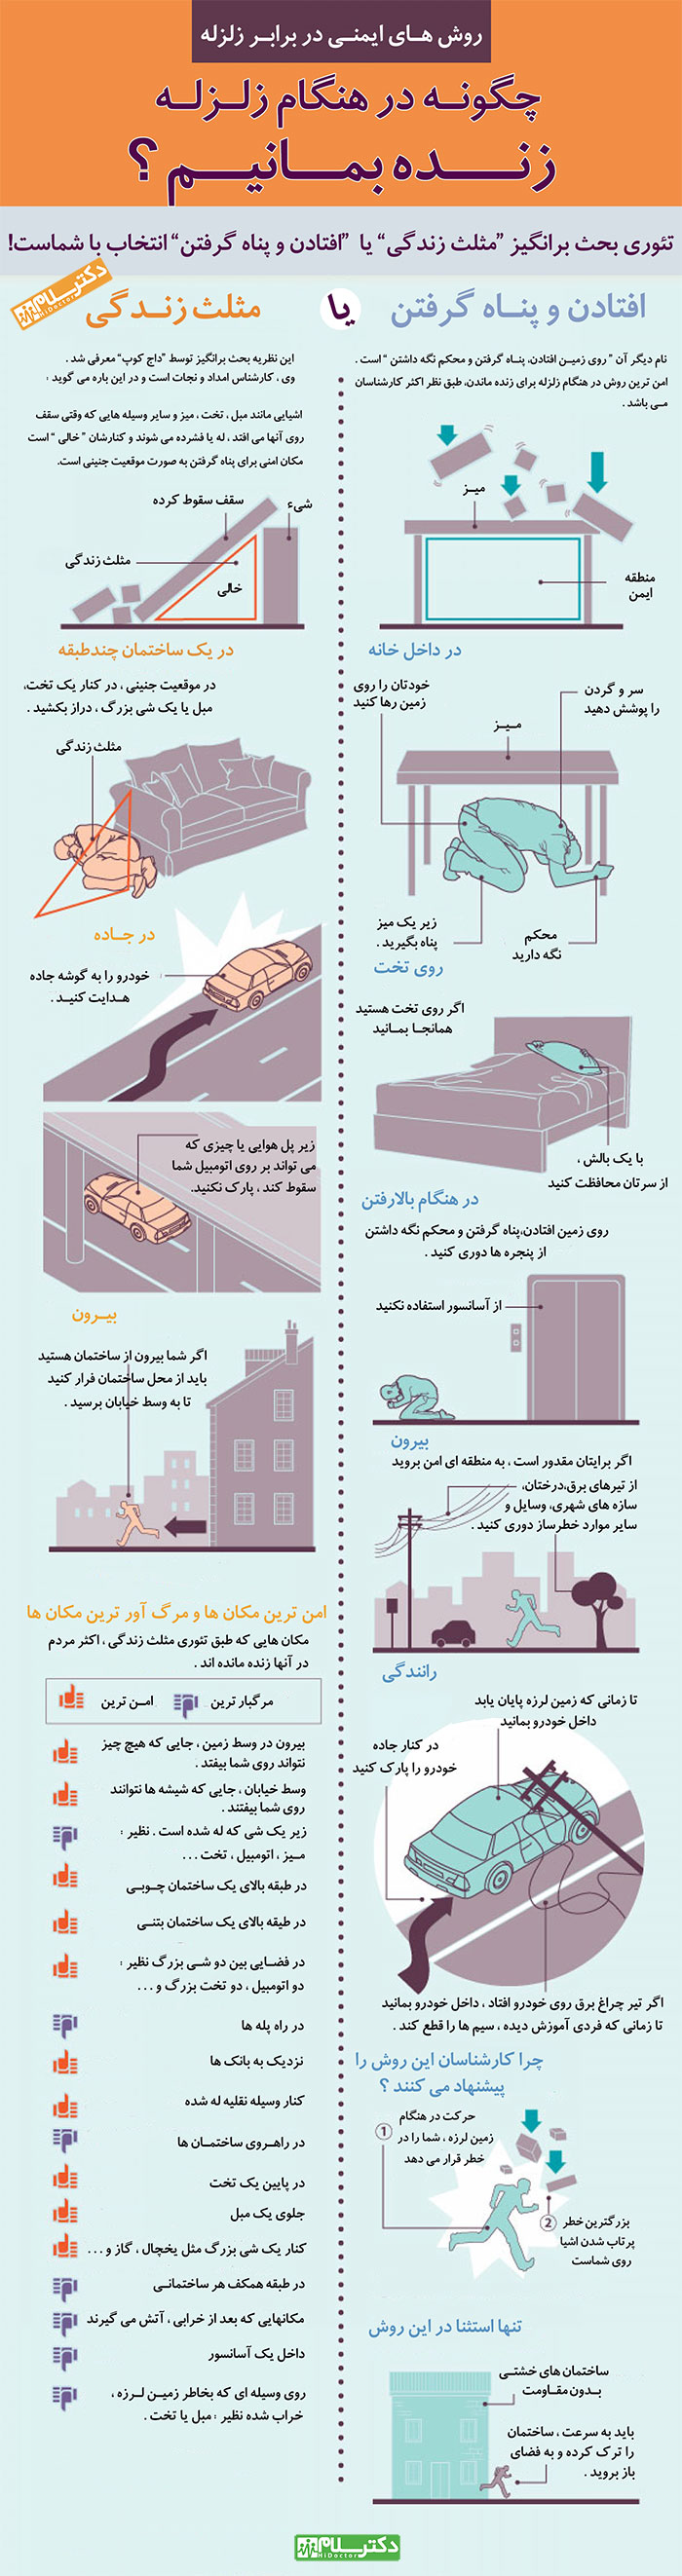 اینفوگرافیک زلزله,زلزله,زلزله های بزرگ ایران,ایمنی در برابر زلزله